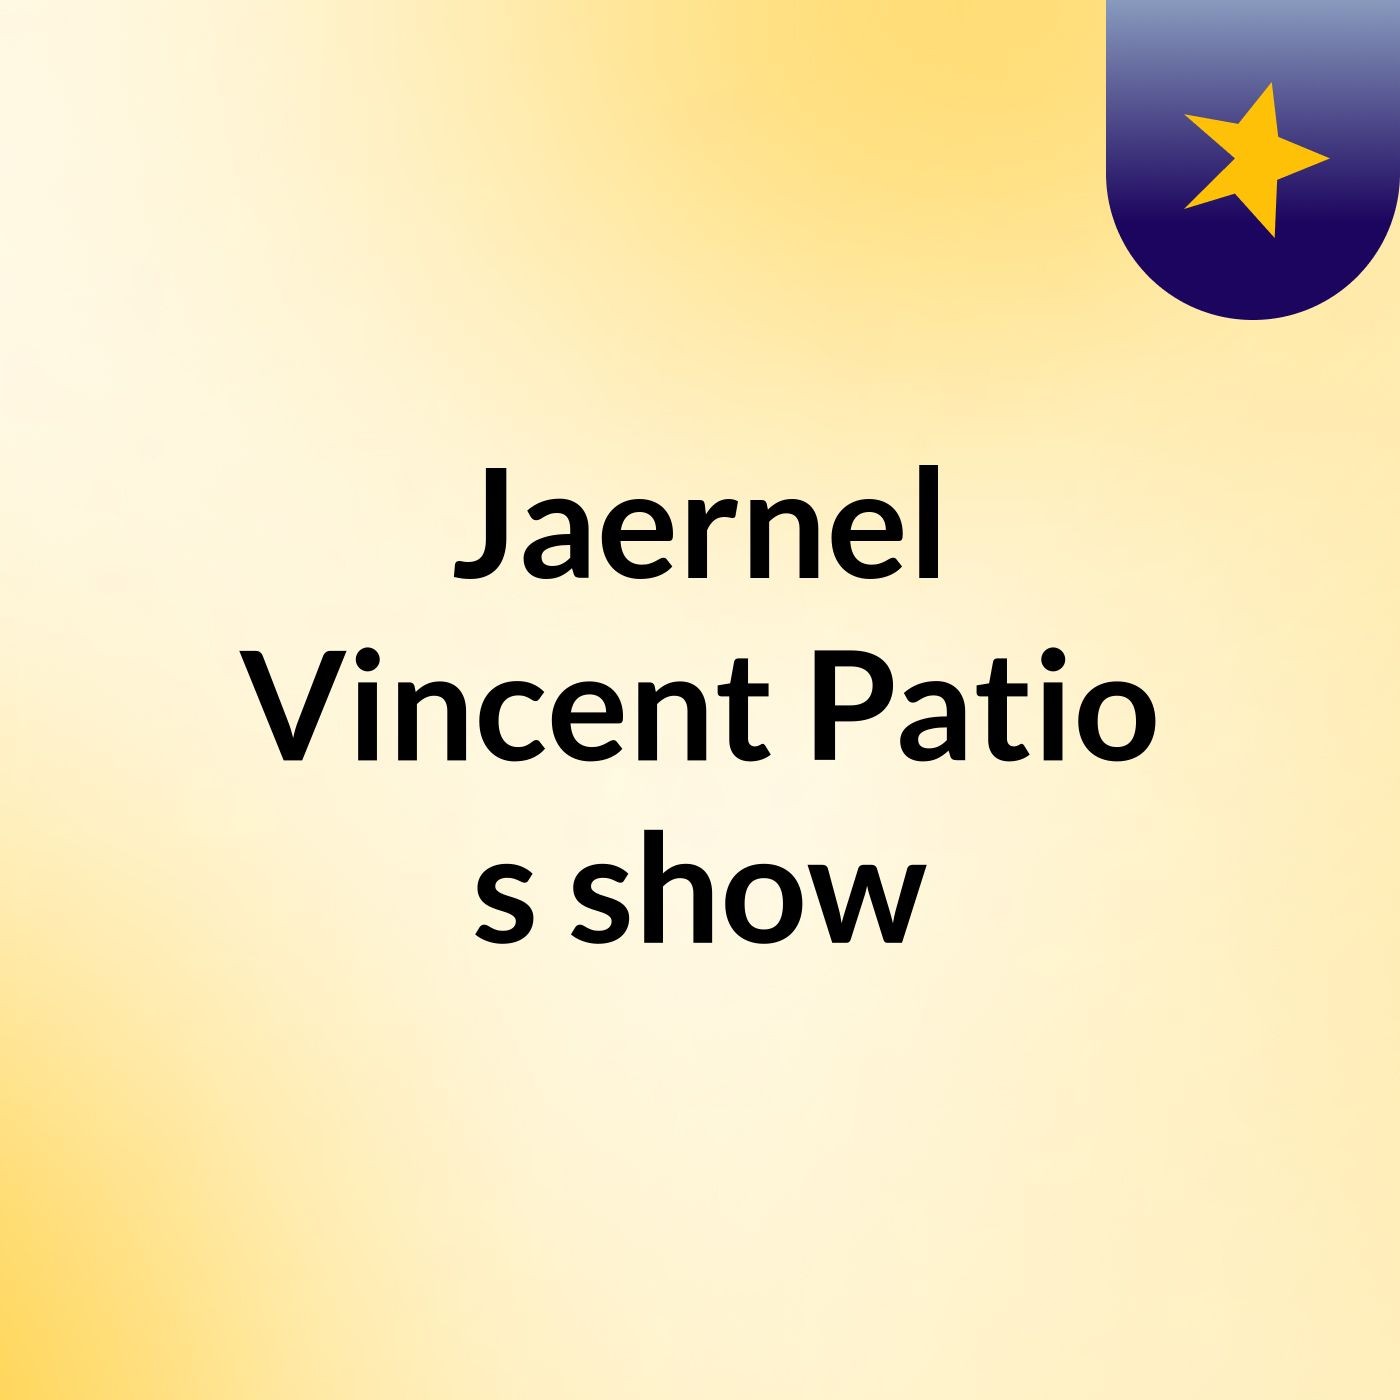 Jaernel Vincent Patio's show